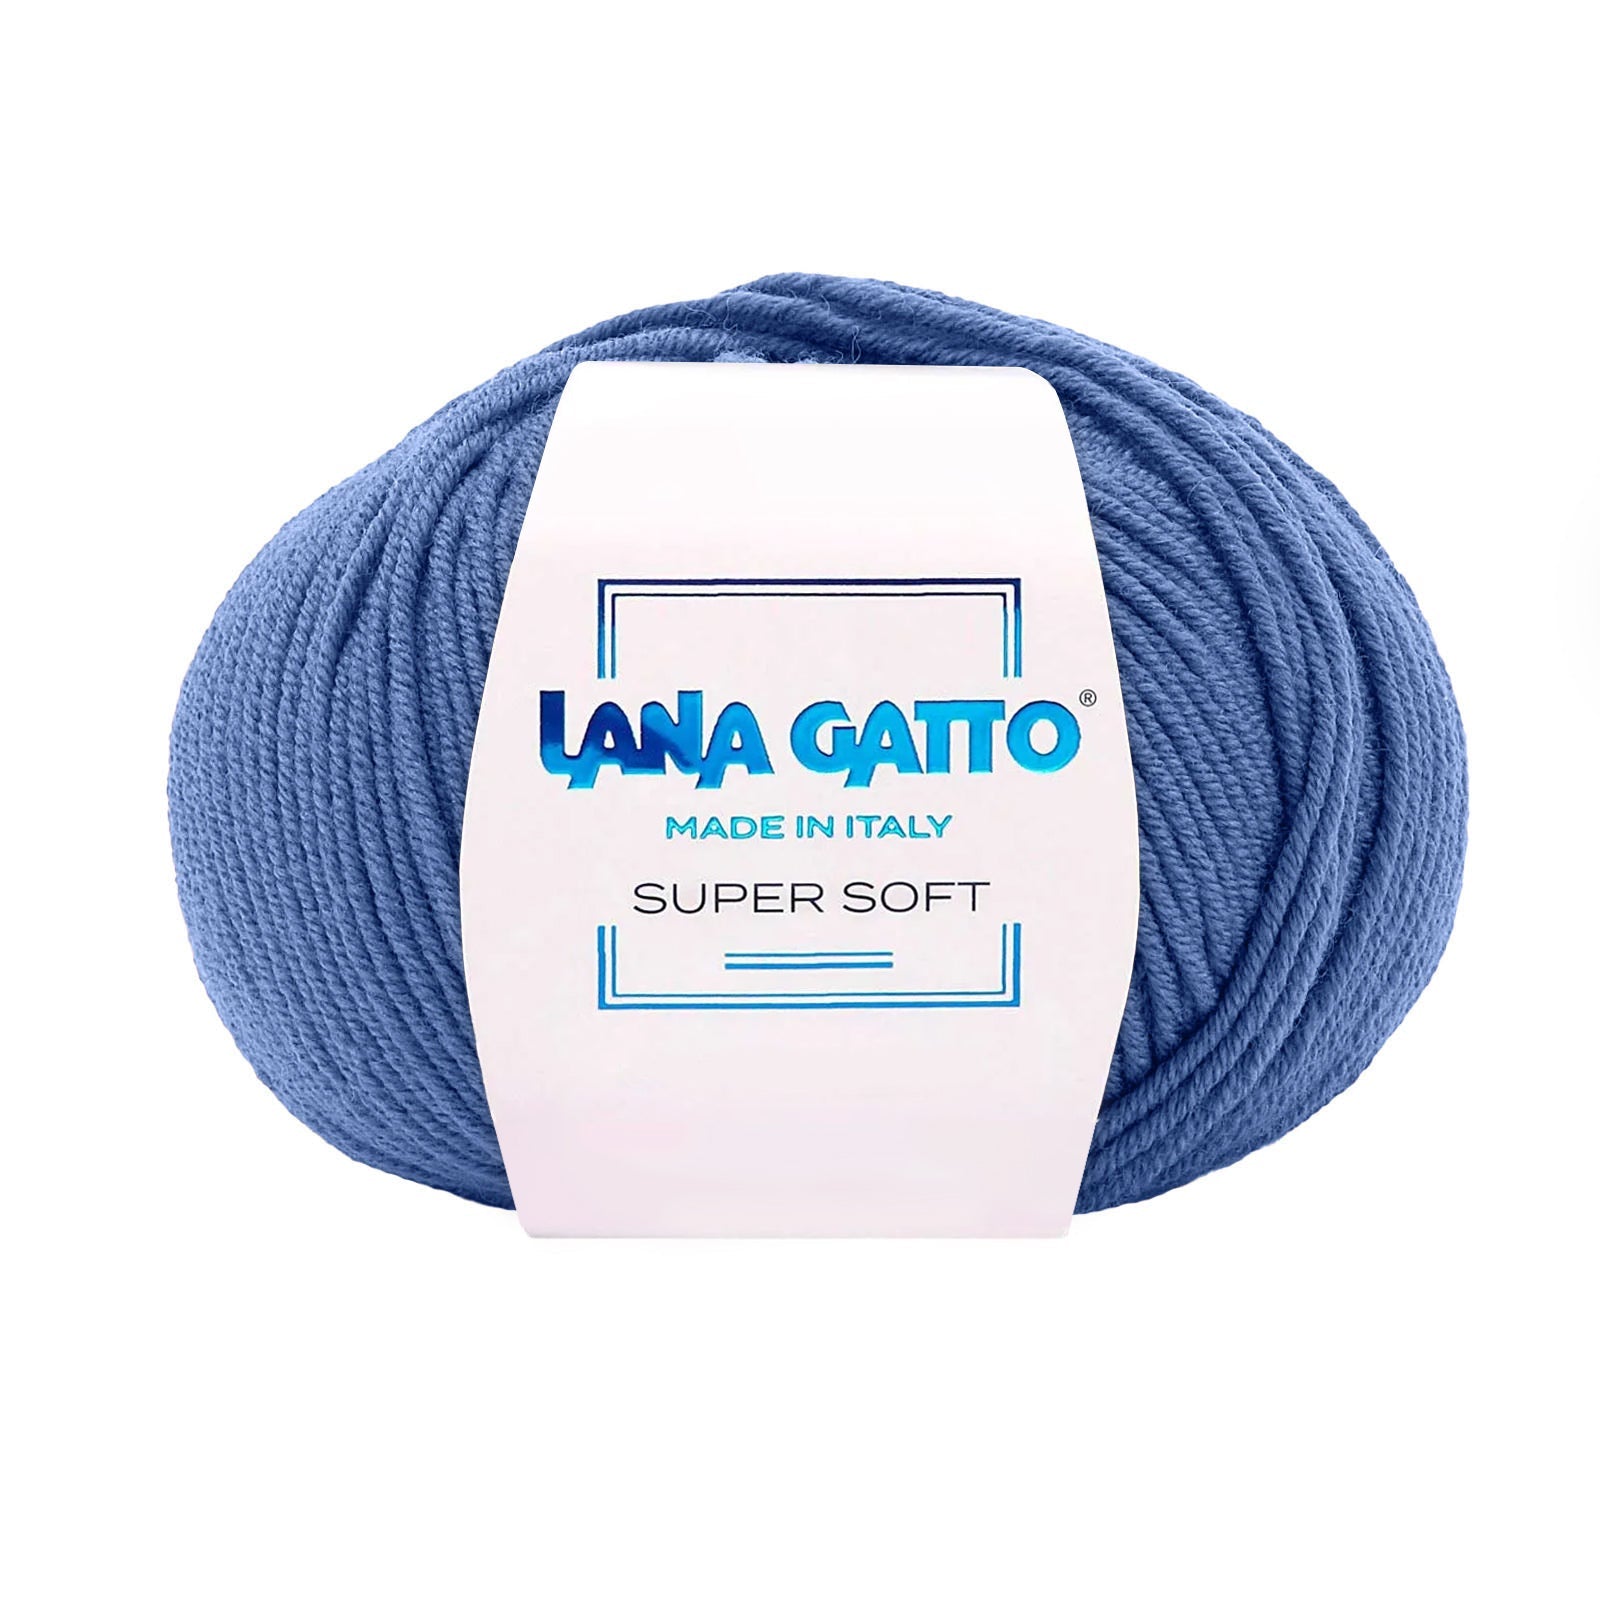 Gomitolo 100% Pura Lana Vergine Merino Extrafine Lana Gatto Linea Super Soft - Tonalità Blu - Blu - 14335 - Gomitolo